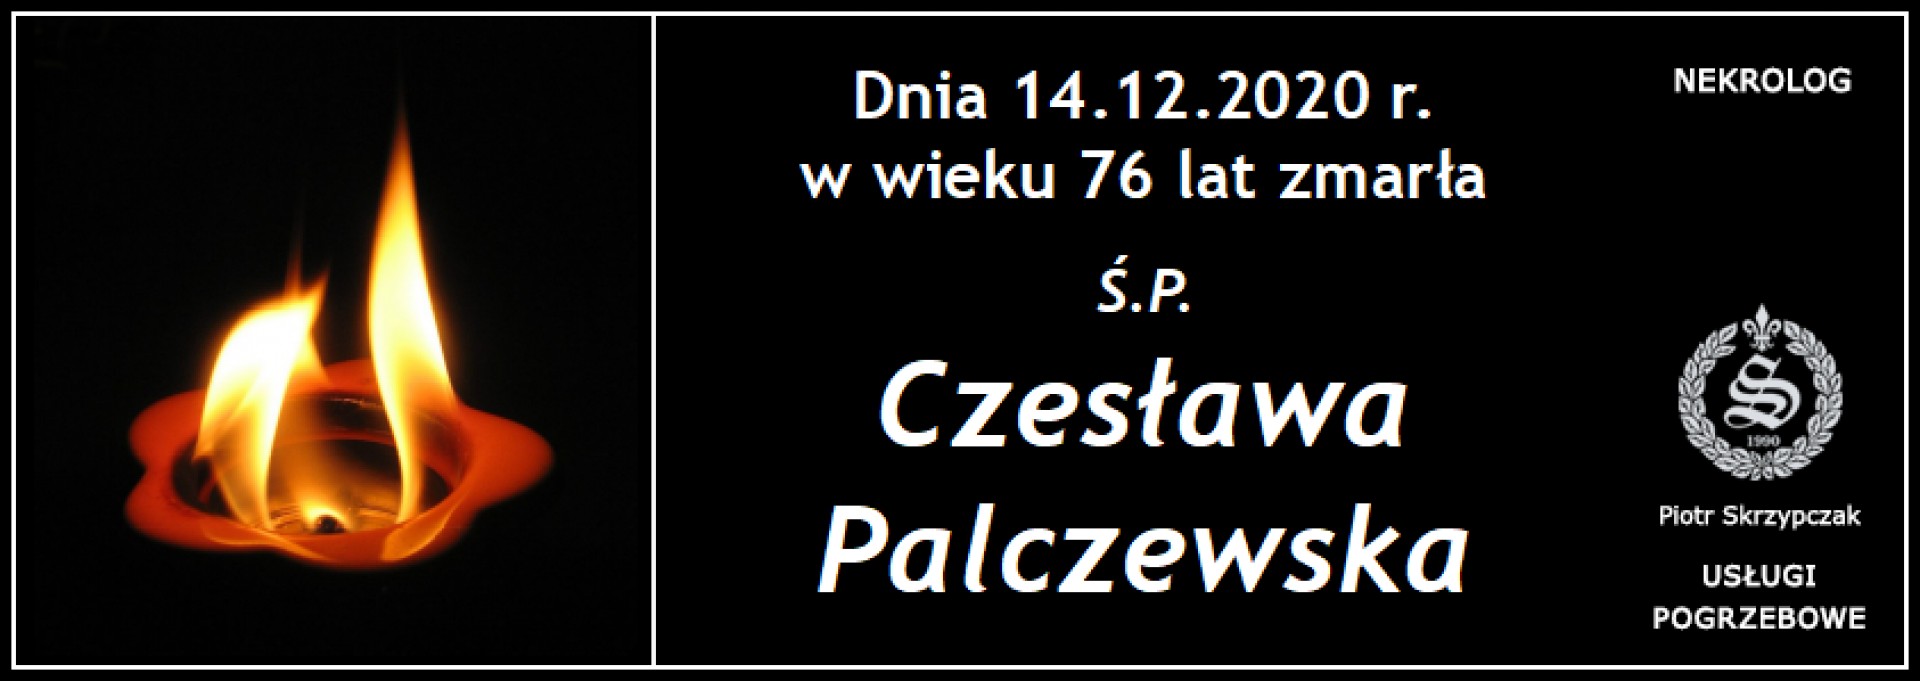 Ś.P. Czesława Palczewska